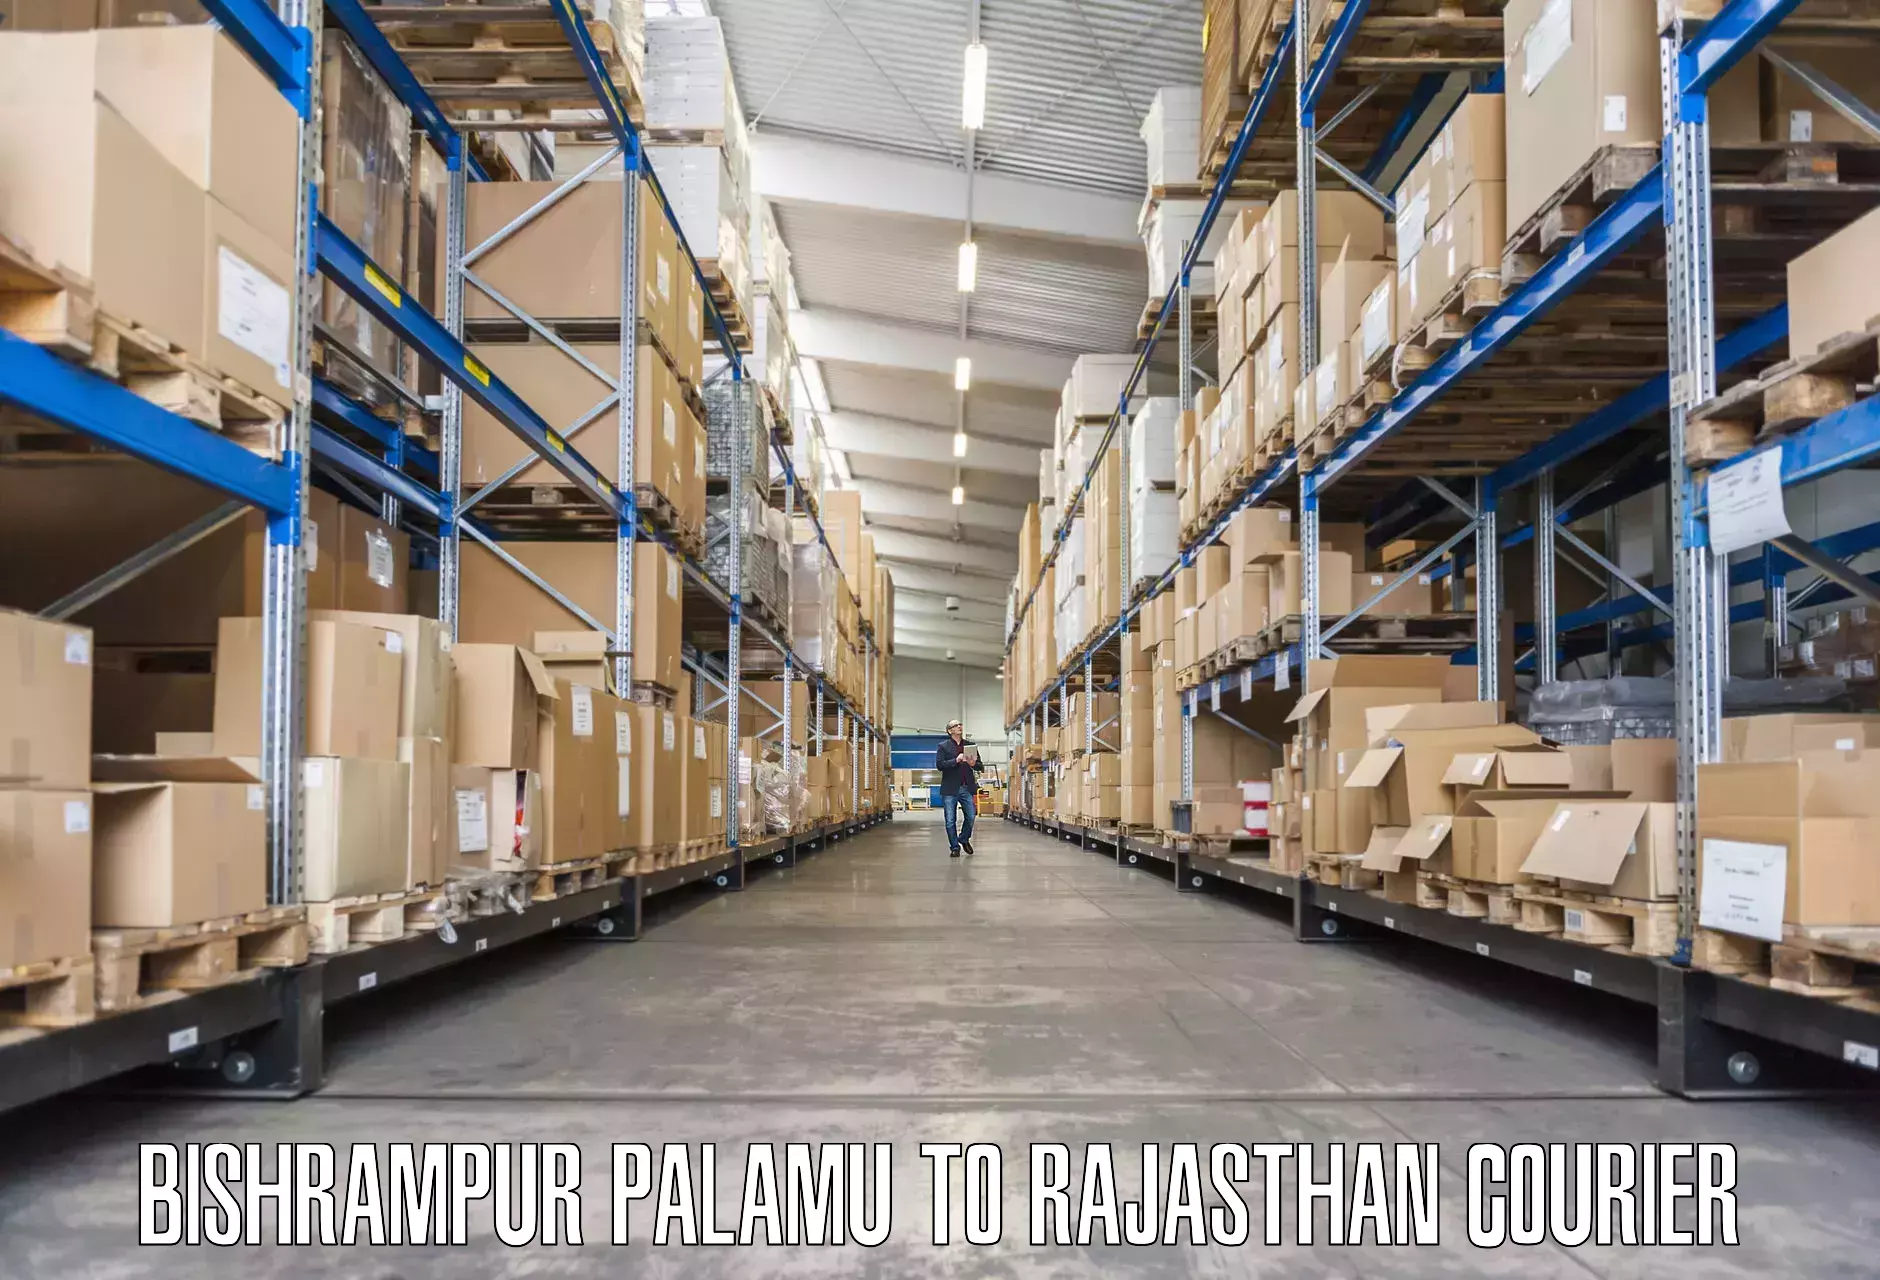 Skilled furniture movers Bishrampur Palamu to Mandphiya